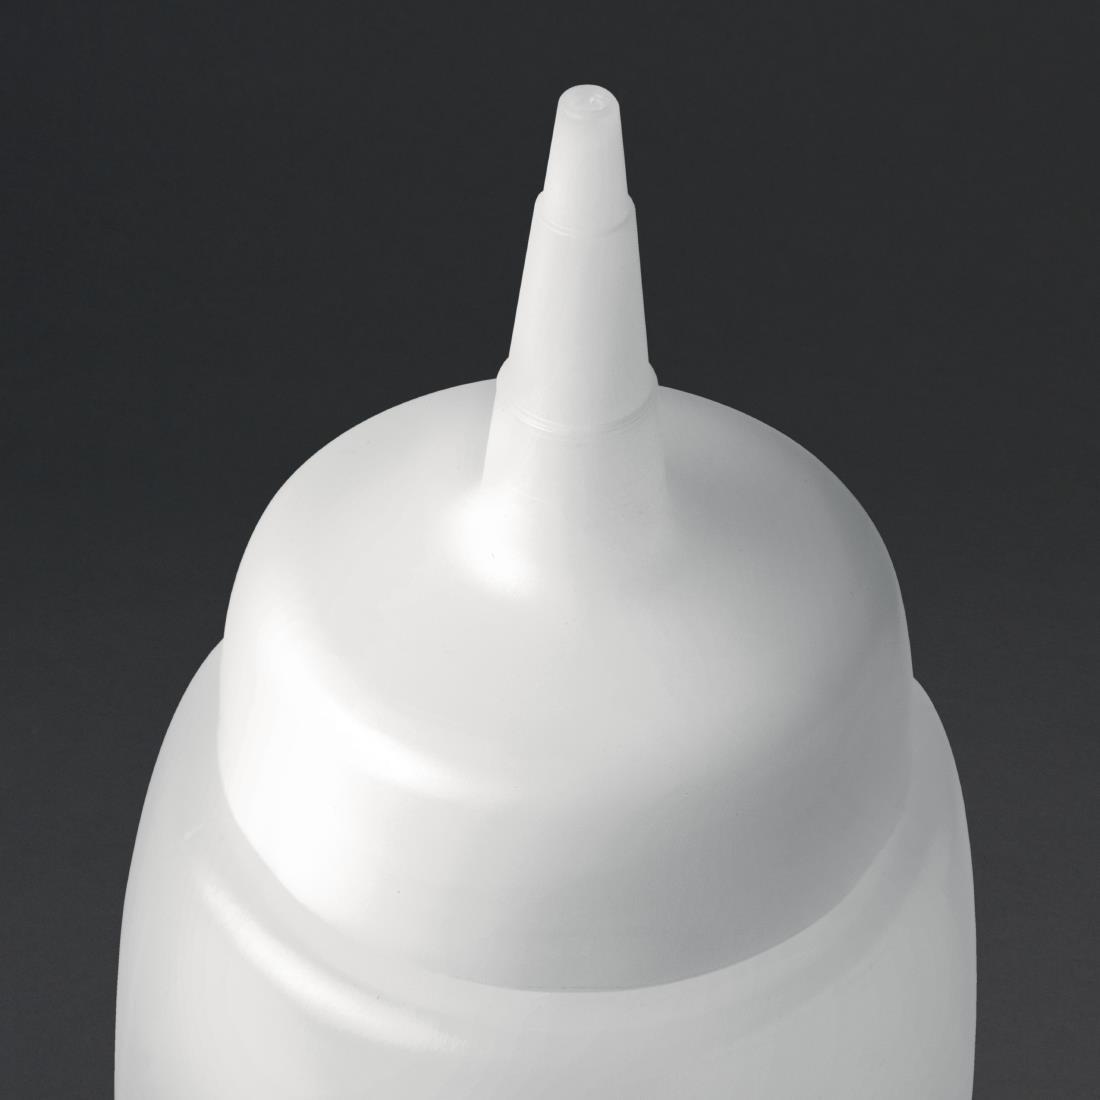 Araven Sauce Bottle 17oz - CW121  - 2